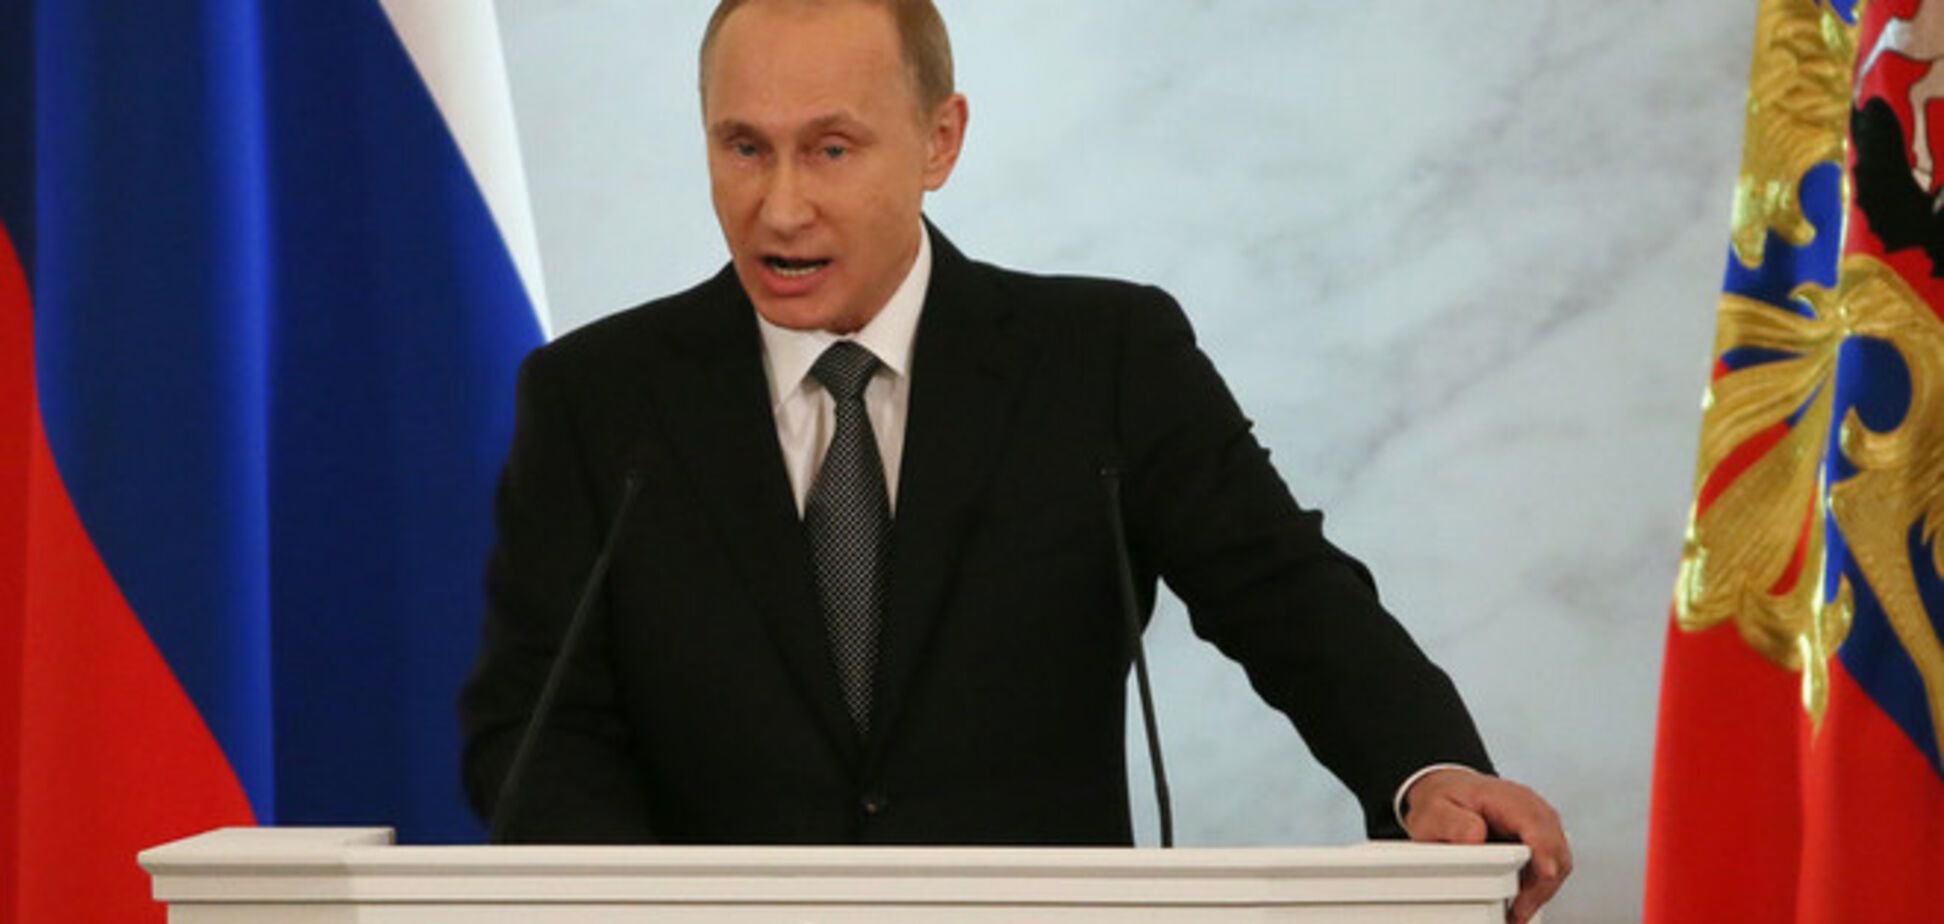 В своей речи Путин сам подчеркнул право Киева, а не Москвы на Крым - СМИ